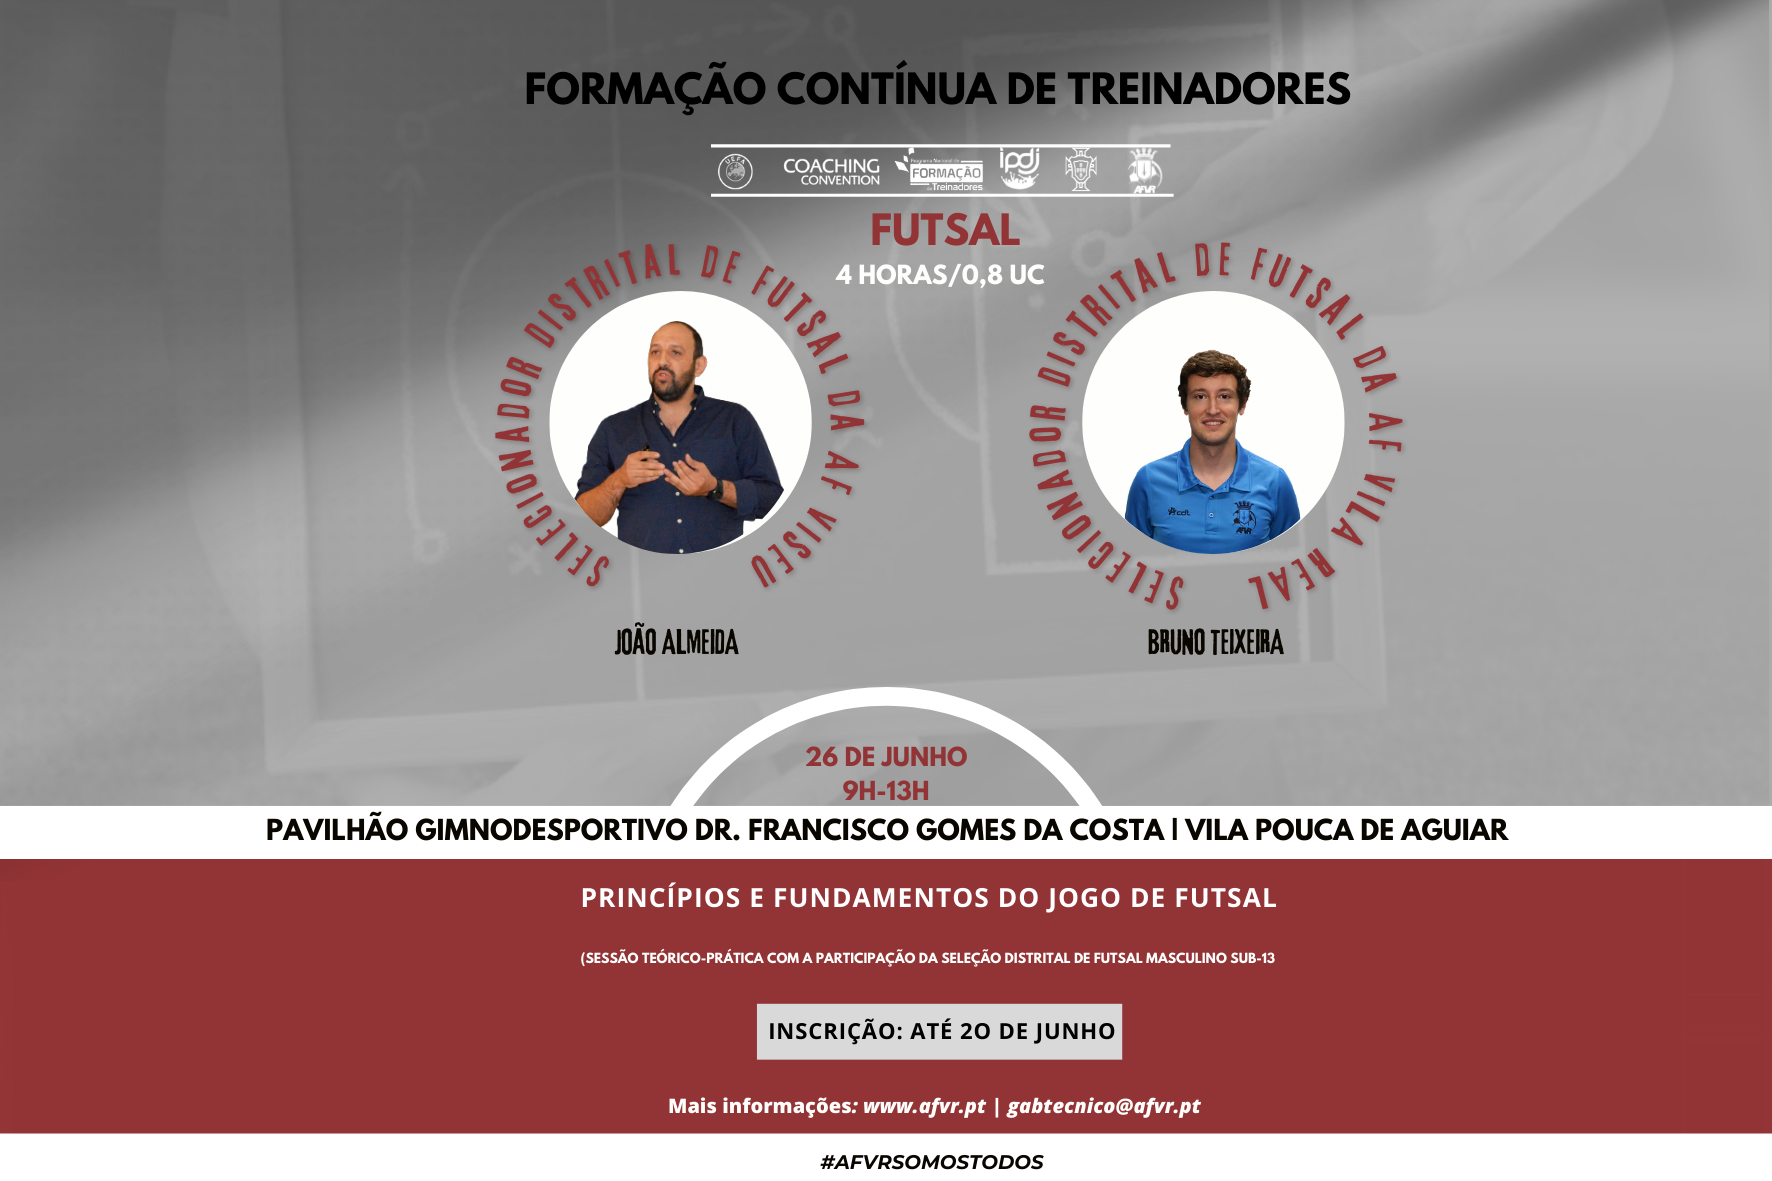 FORMAÇÃO CONTÍNUA DE TREINADORES DE FUTSAL